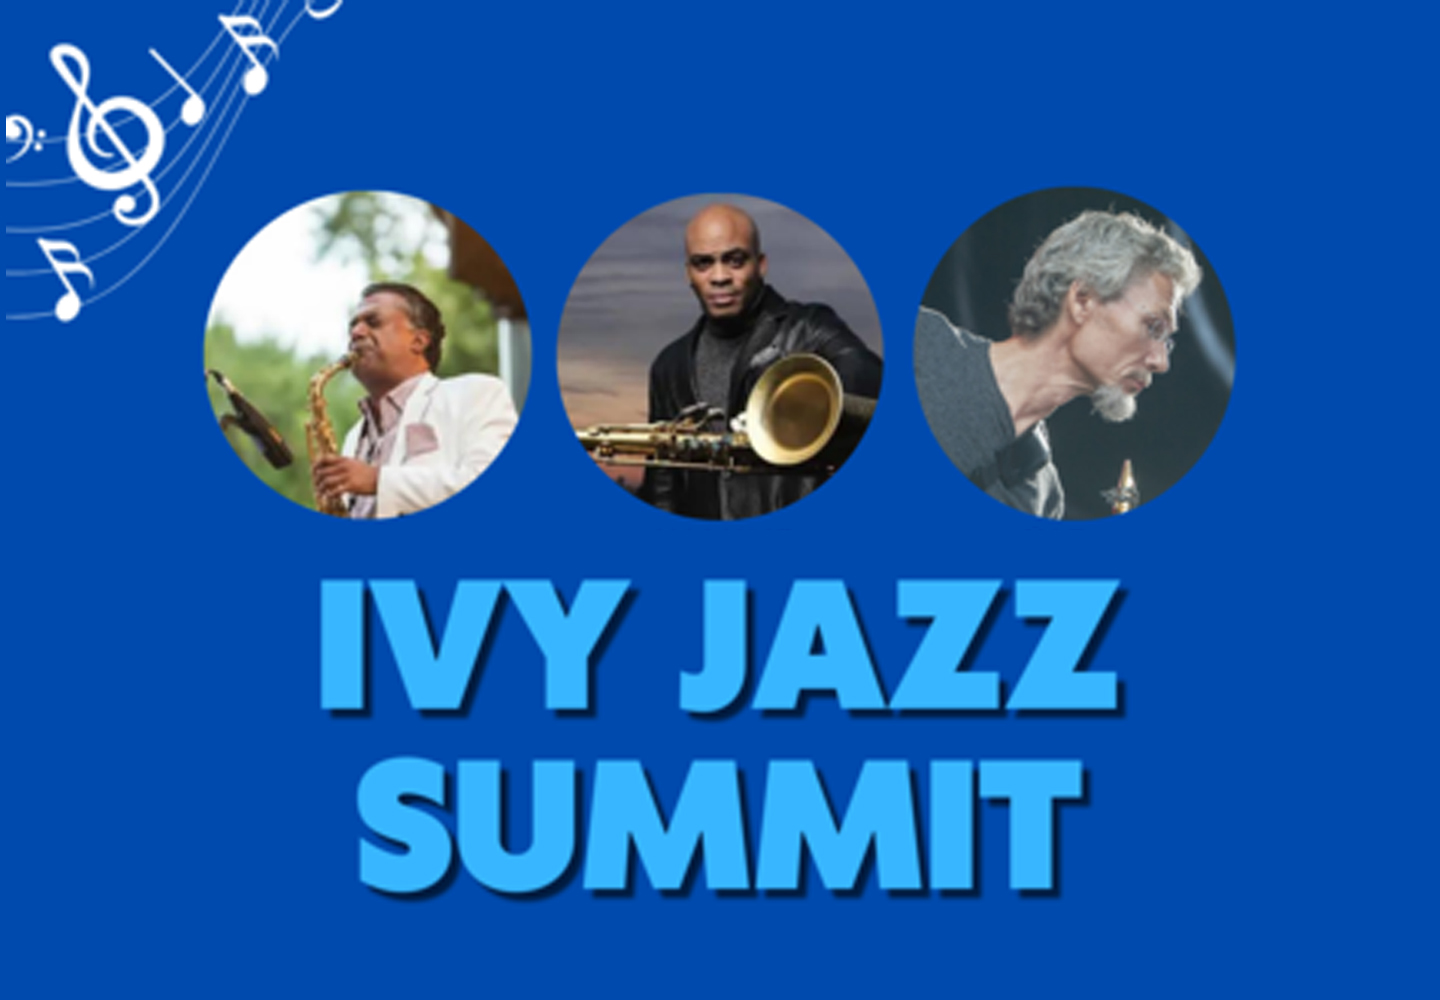 Ivy Jazz Summit